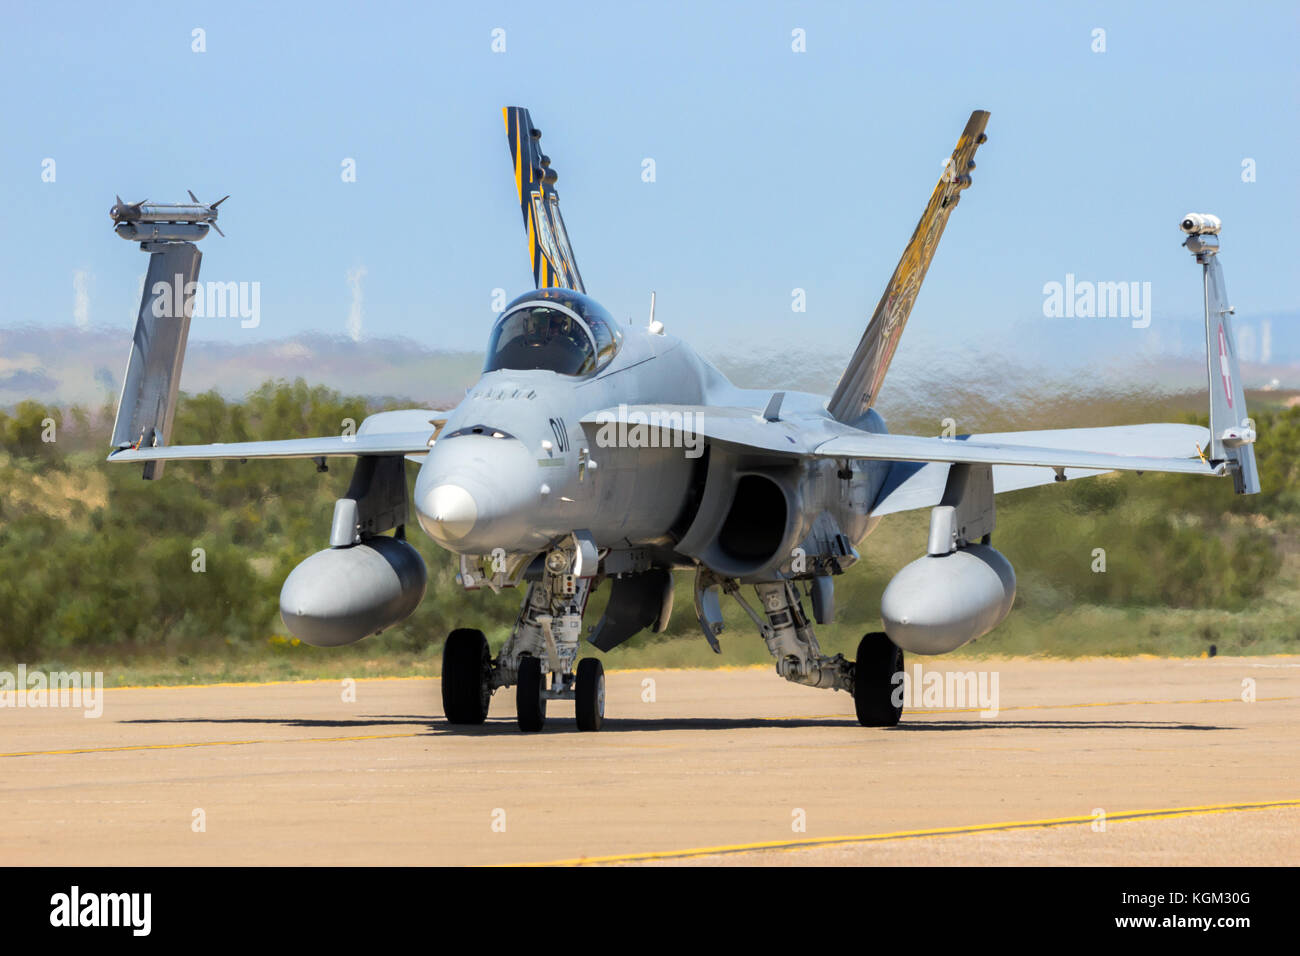 Saragosse, ESPAGNE - 20 MAI 2016: Swiss Air Force McDonnell Douglas F/A-18 Hornet avion de chasse qui roule sur la base aérienne de Saragosse. Banque D'Images